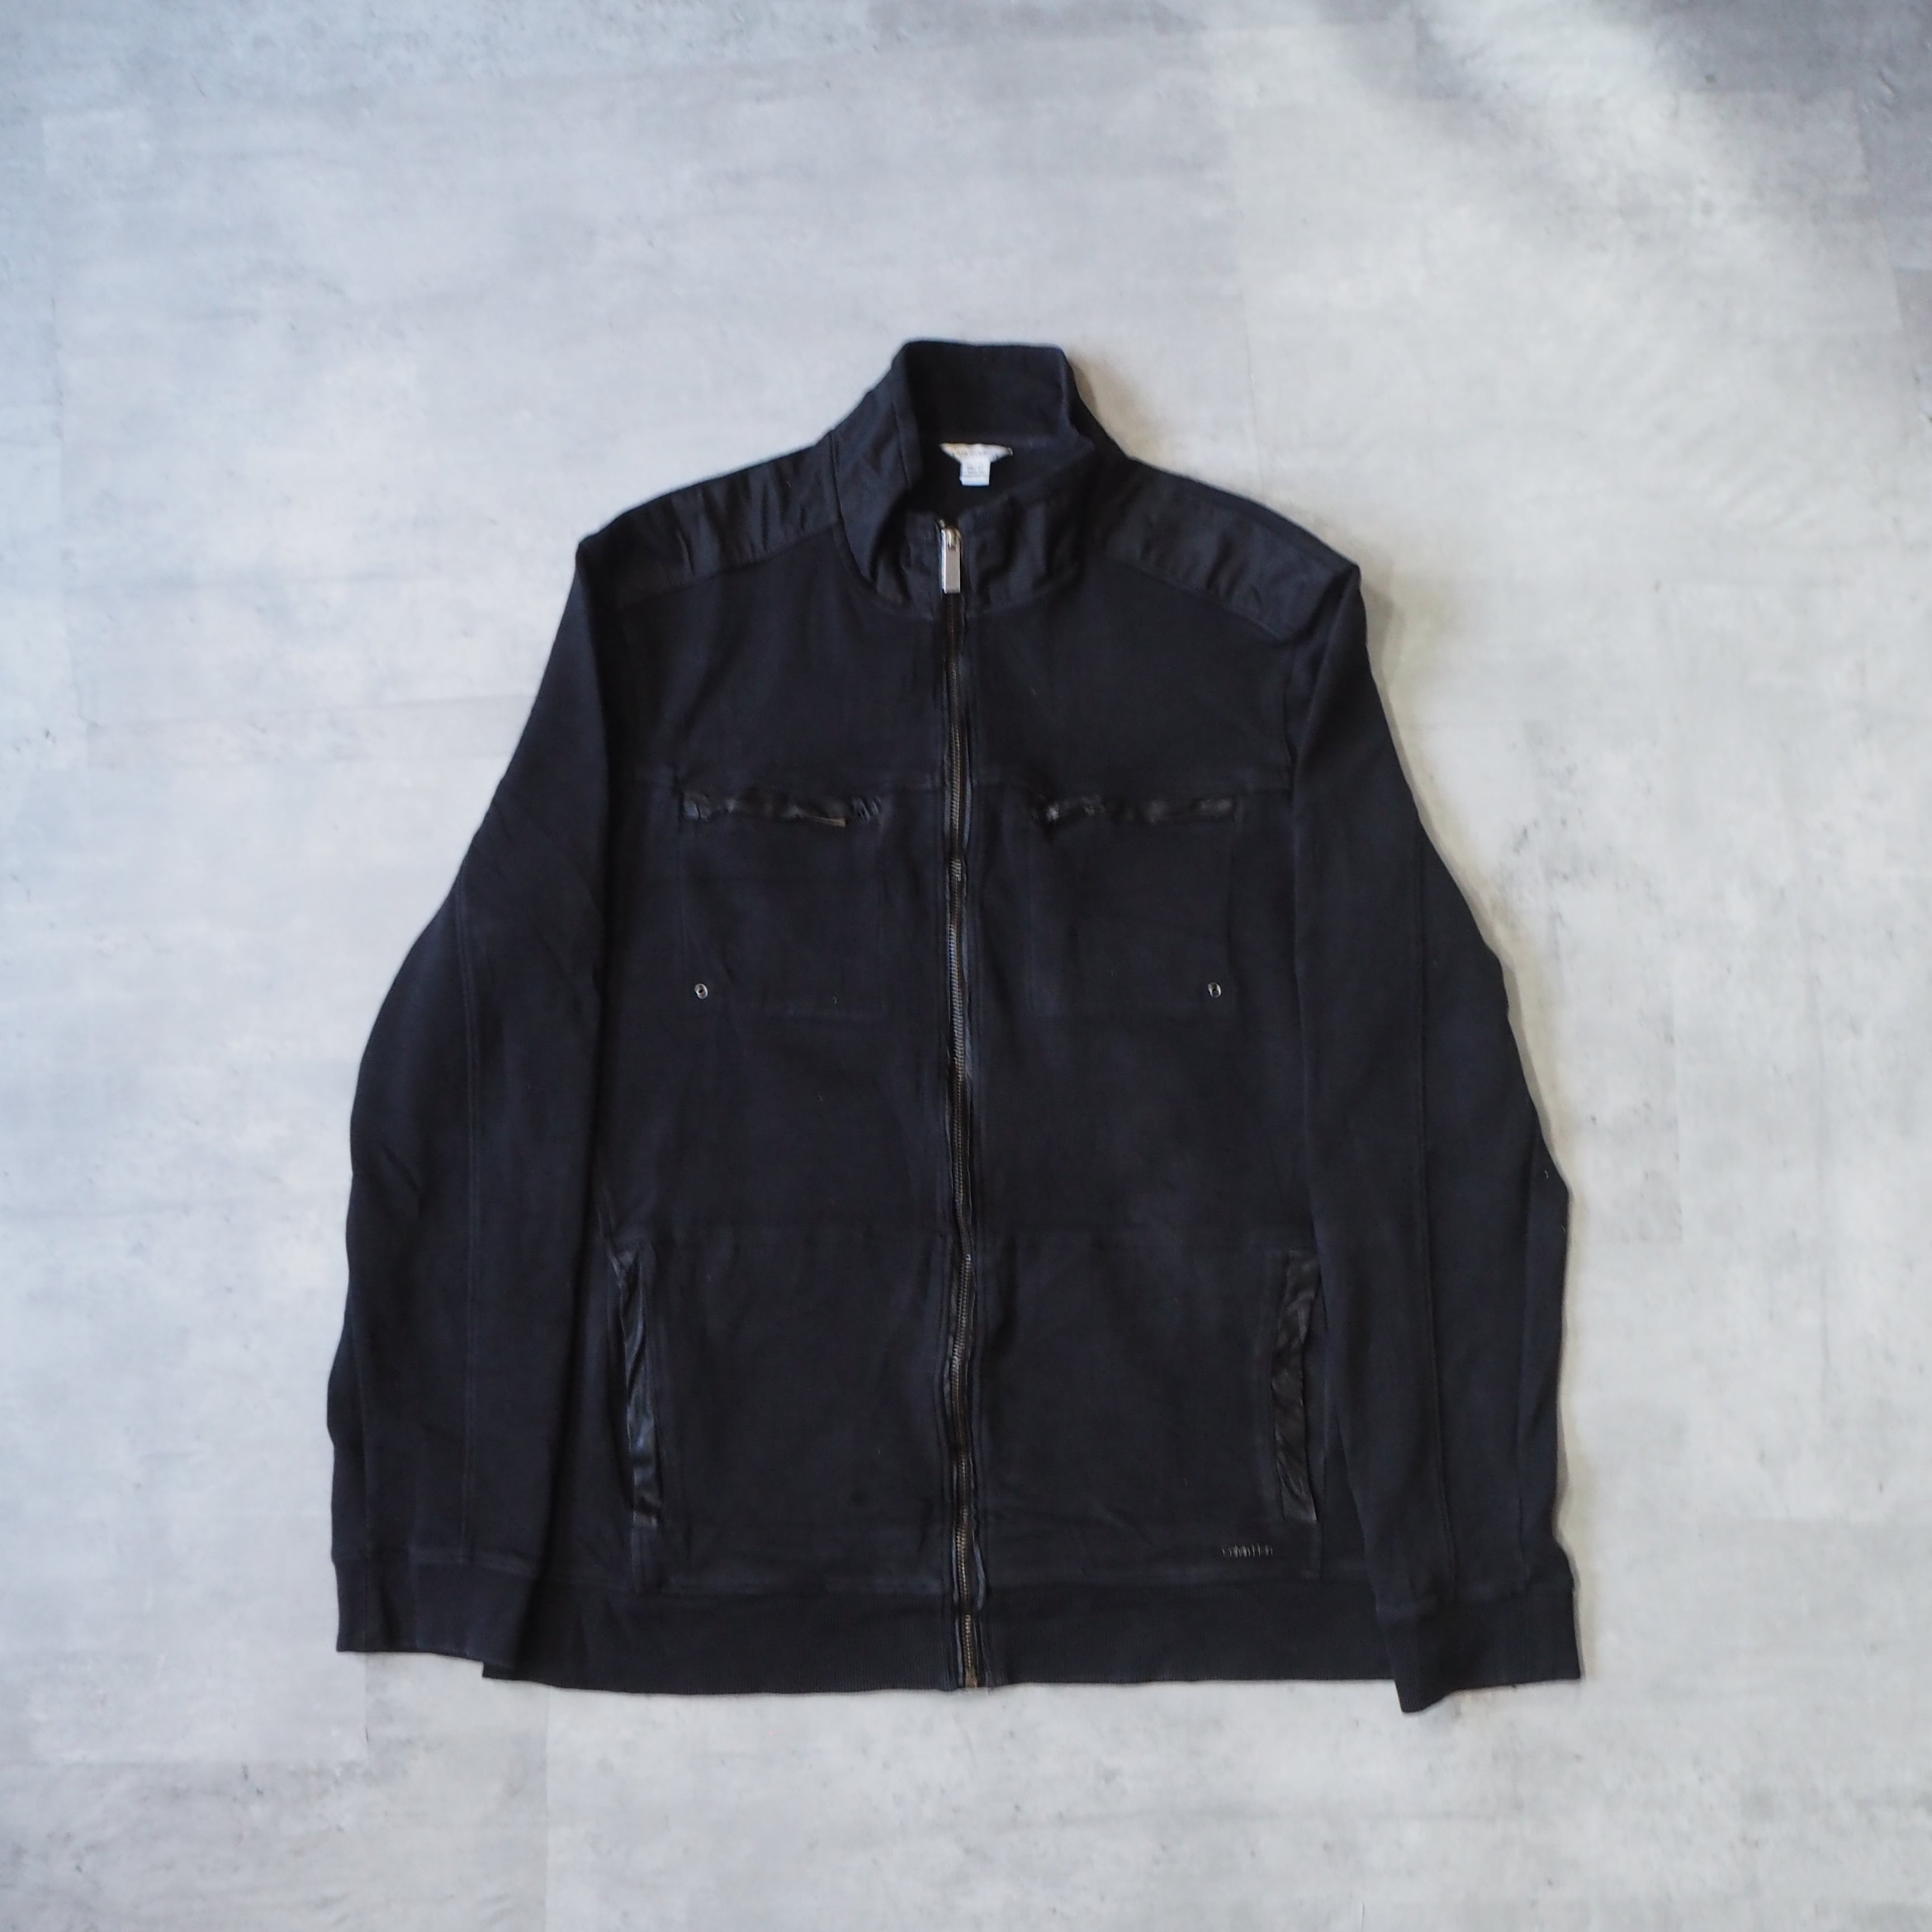 90s 00s old Calvin Klein Half Coat Black